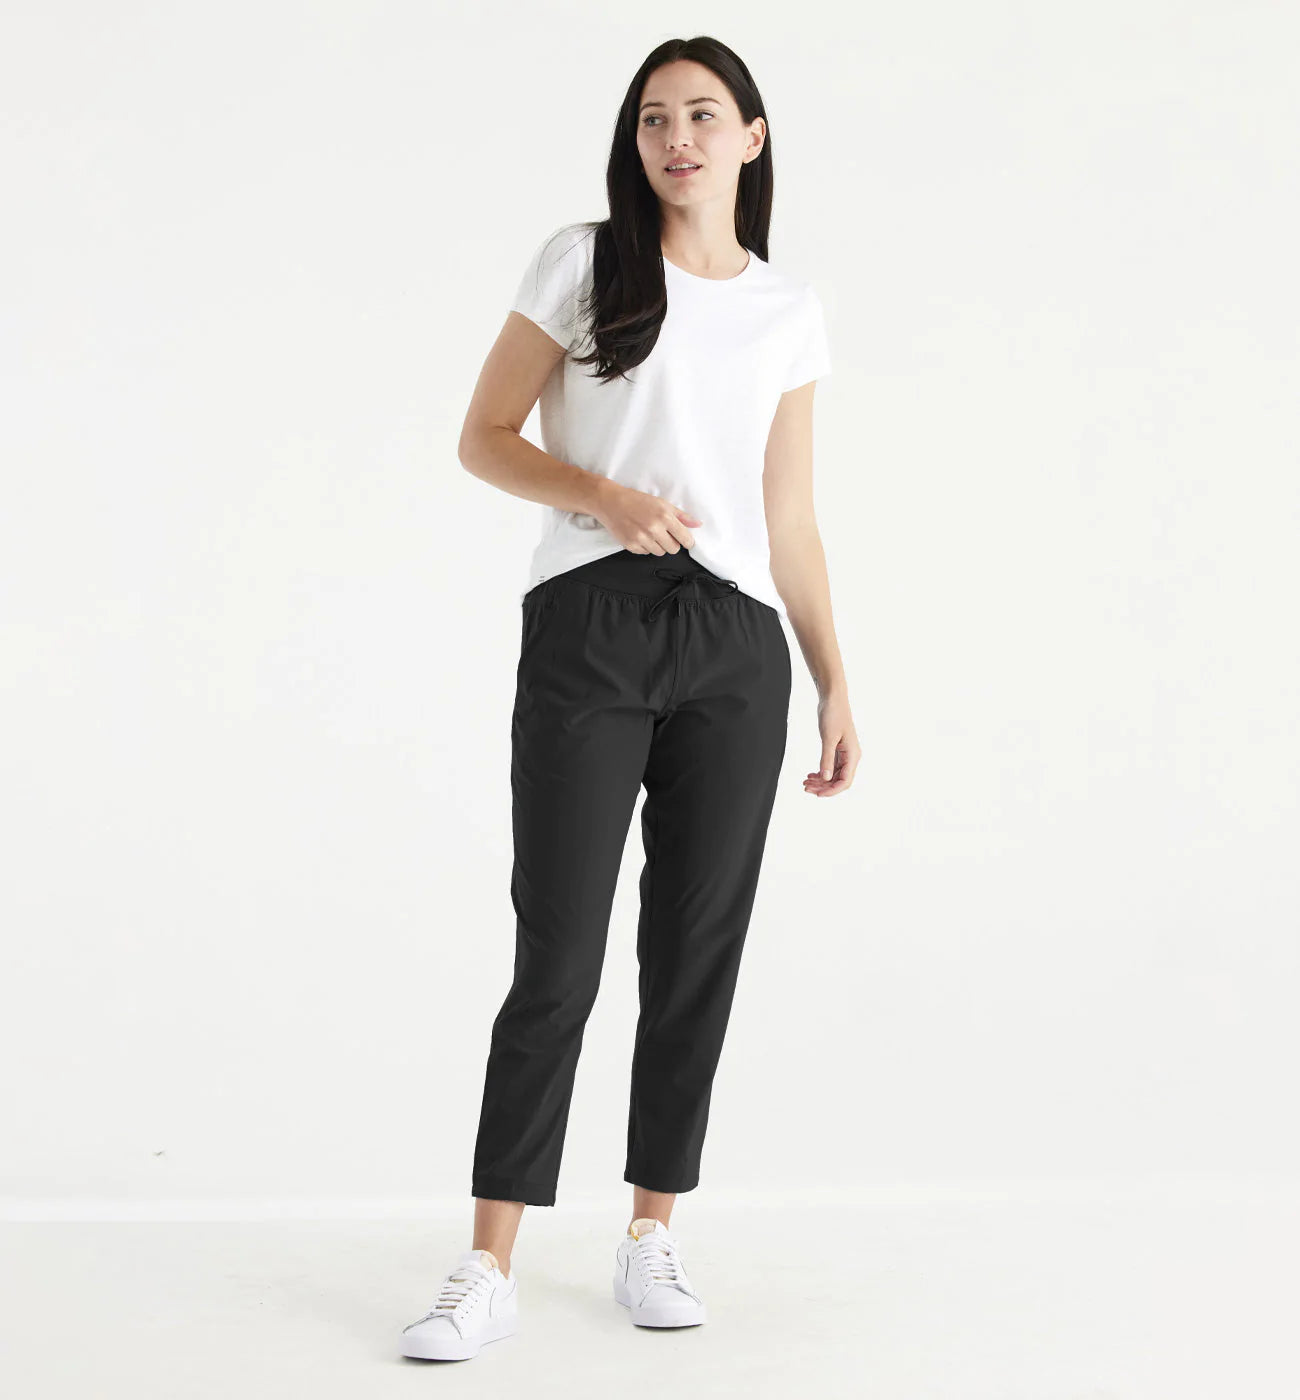 Women's Pants | Slacks for Women | JCPenney